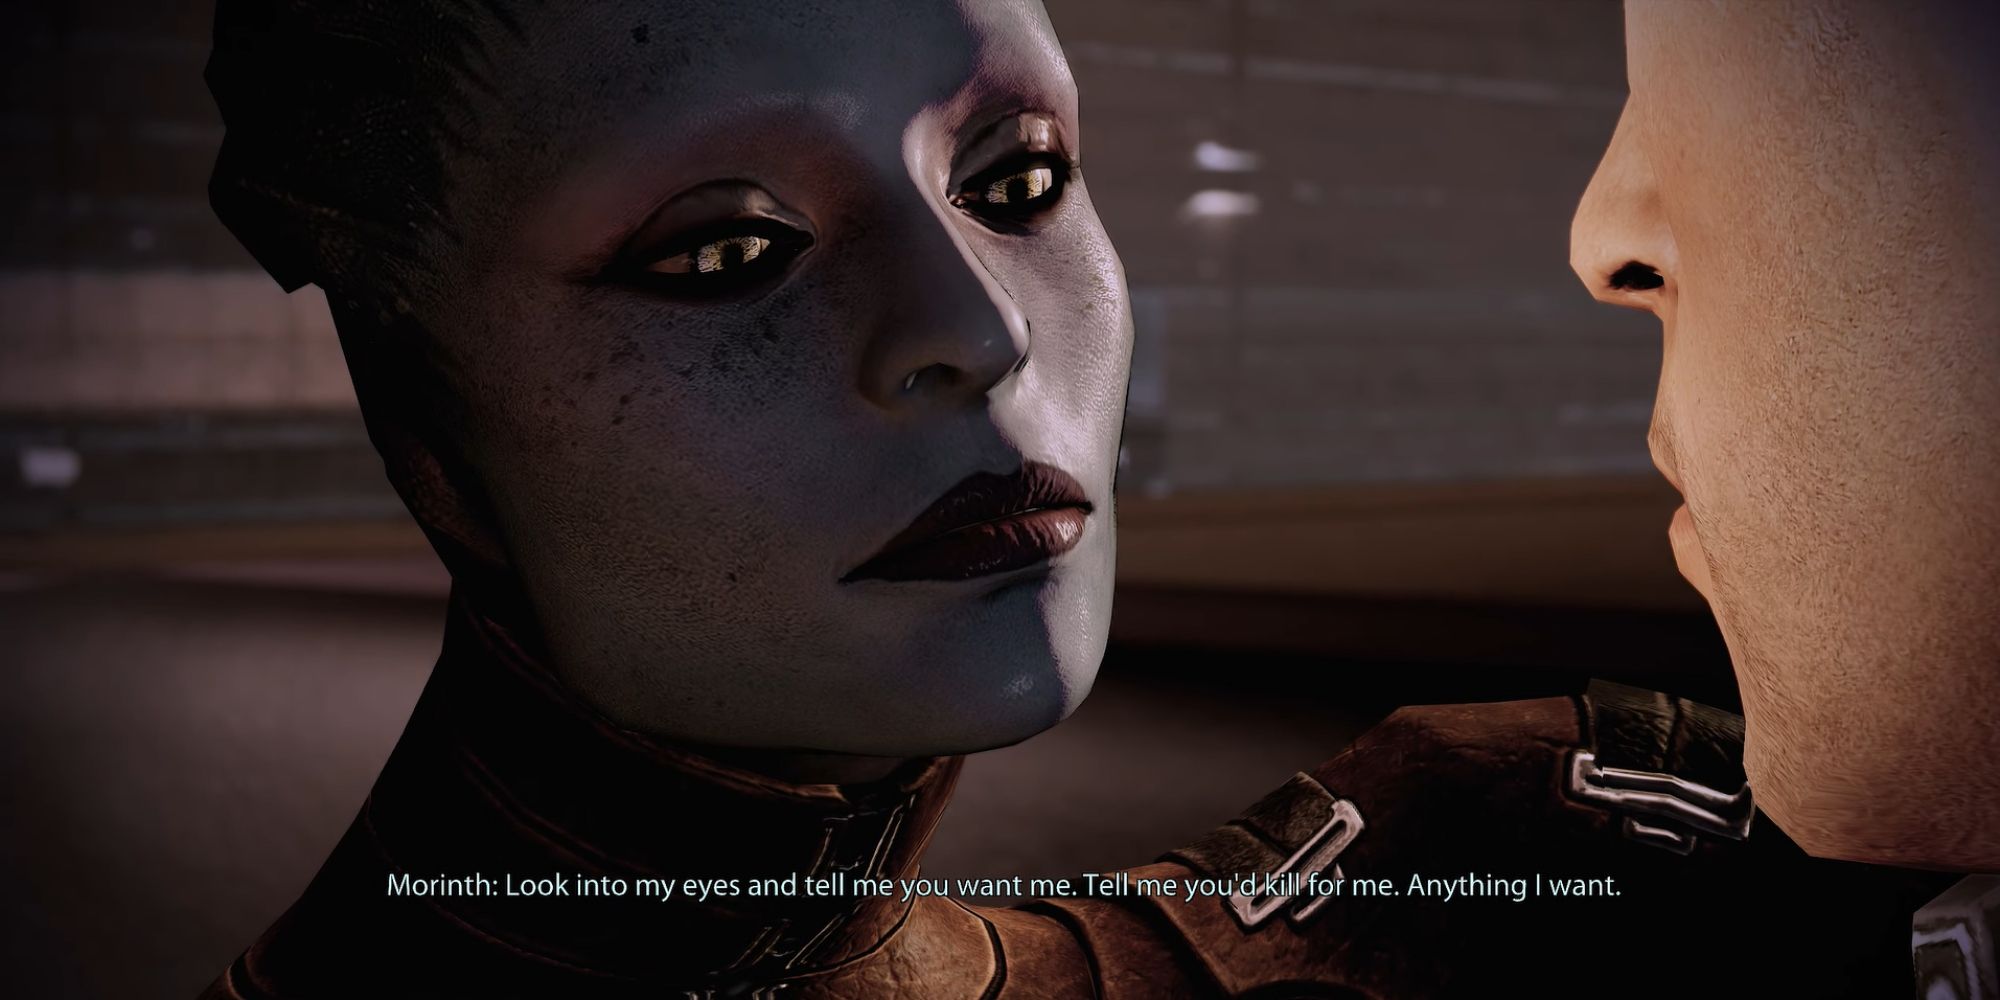 Mass Effect 2 Screenshhot Of Morinth